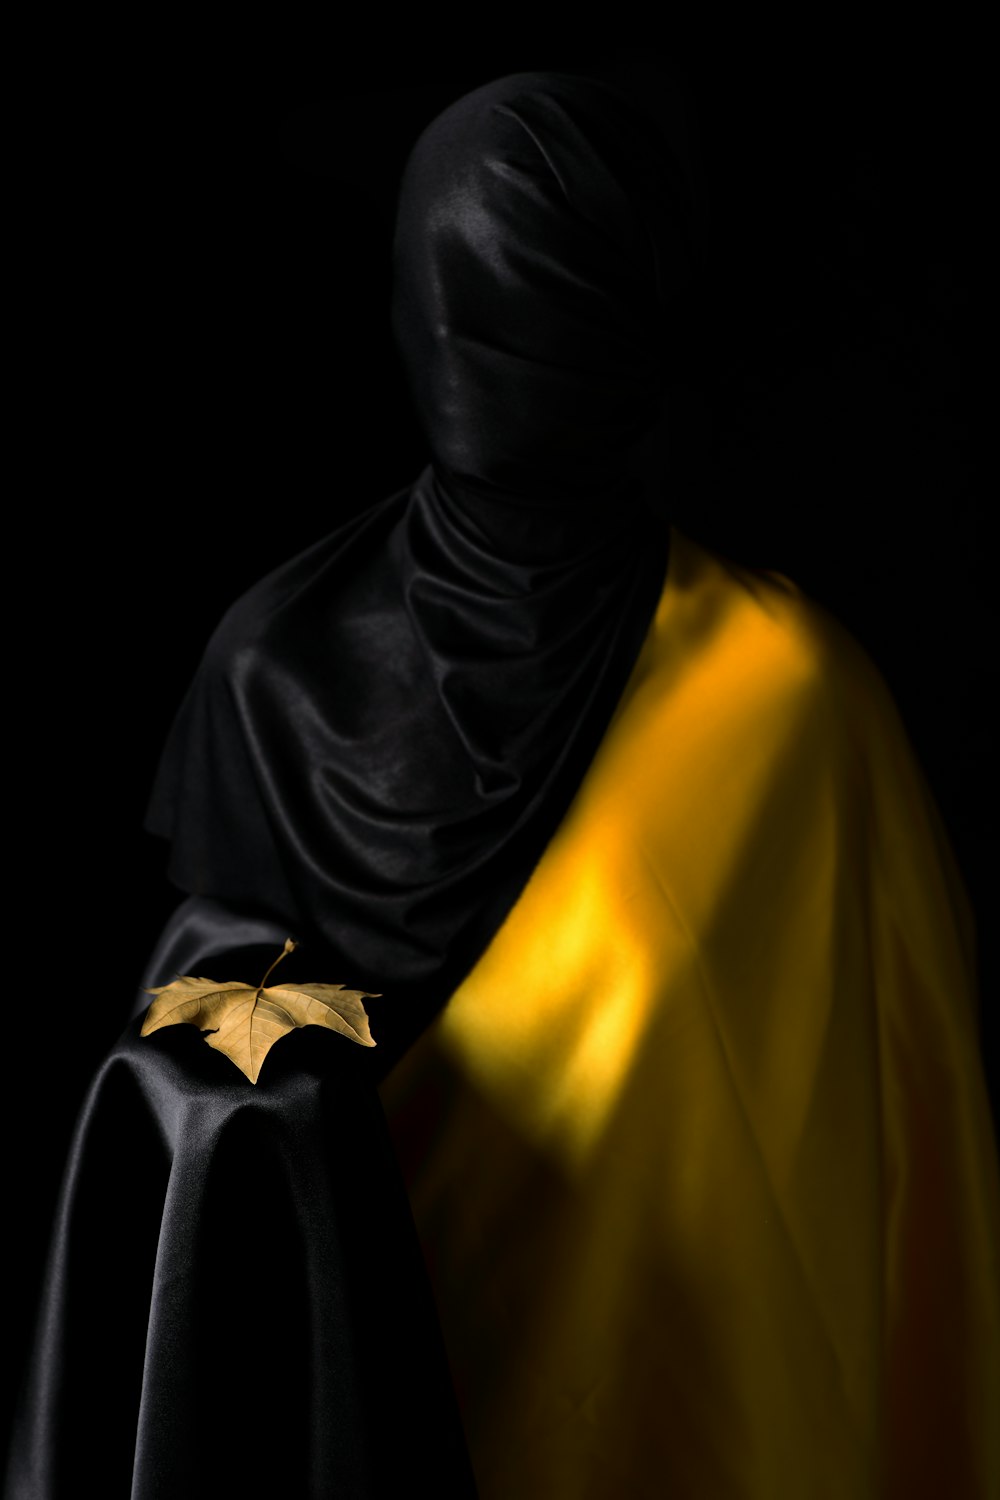 검은 히잡과 노란 드레스를 입은 사람